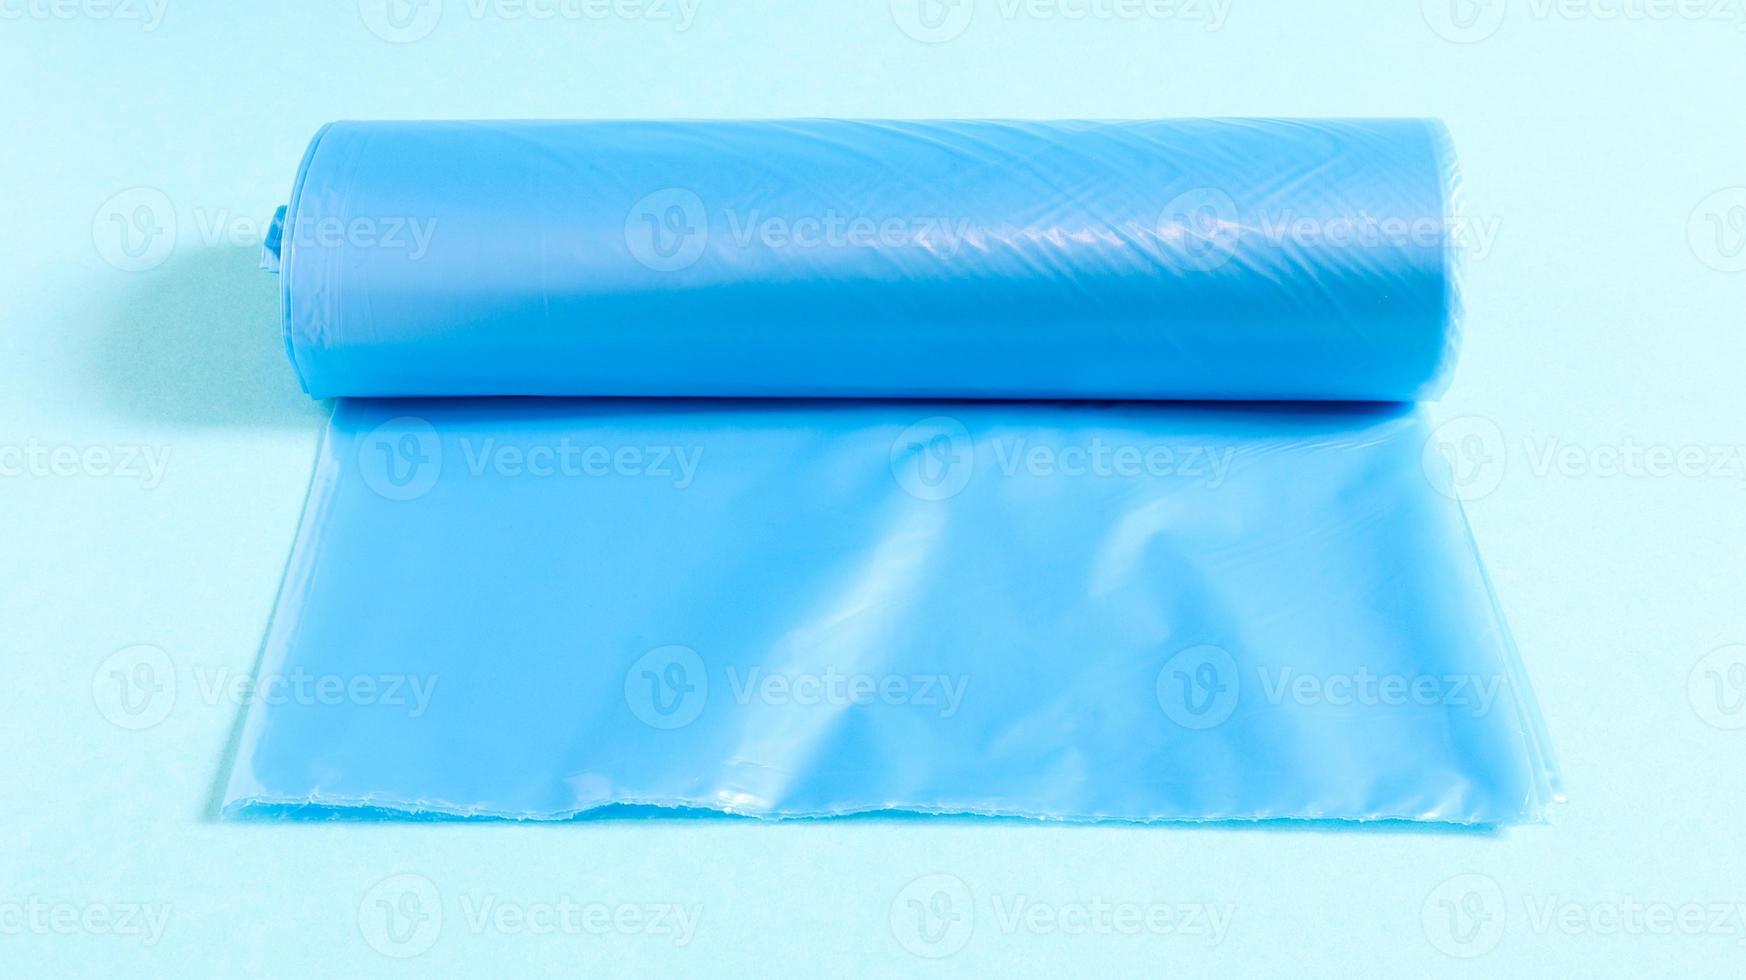 un rotolo di sacchi della spazzatura di plastica in blu su sfondo blu. sacchi progettati per accogliere la spazzatura al loro interno e utilizzati a casa e collocati in vari contenitori della spazzatura. foto